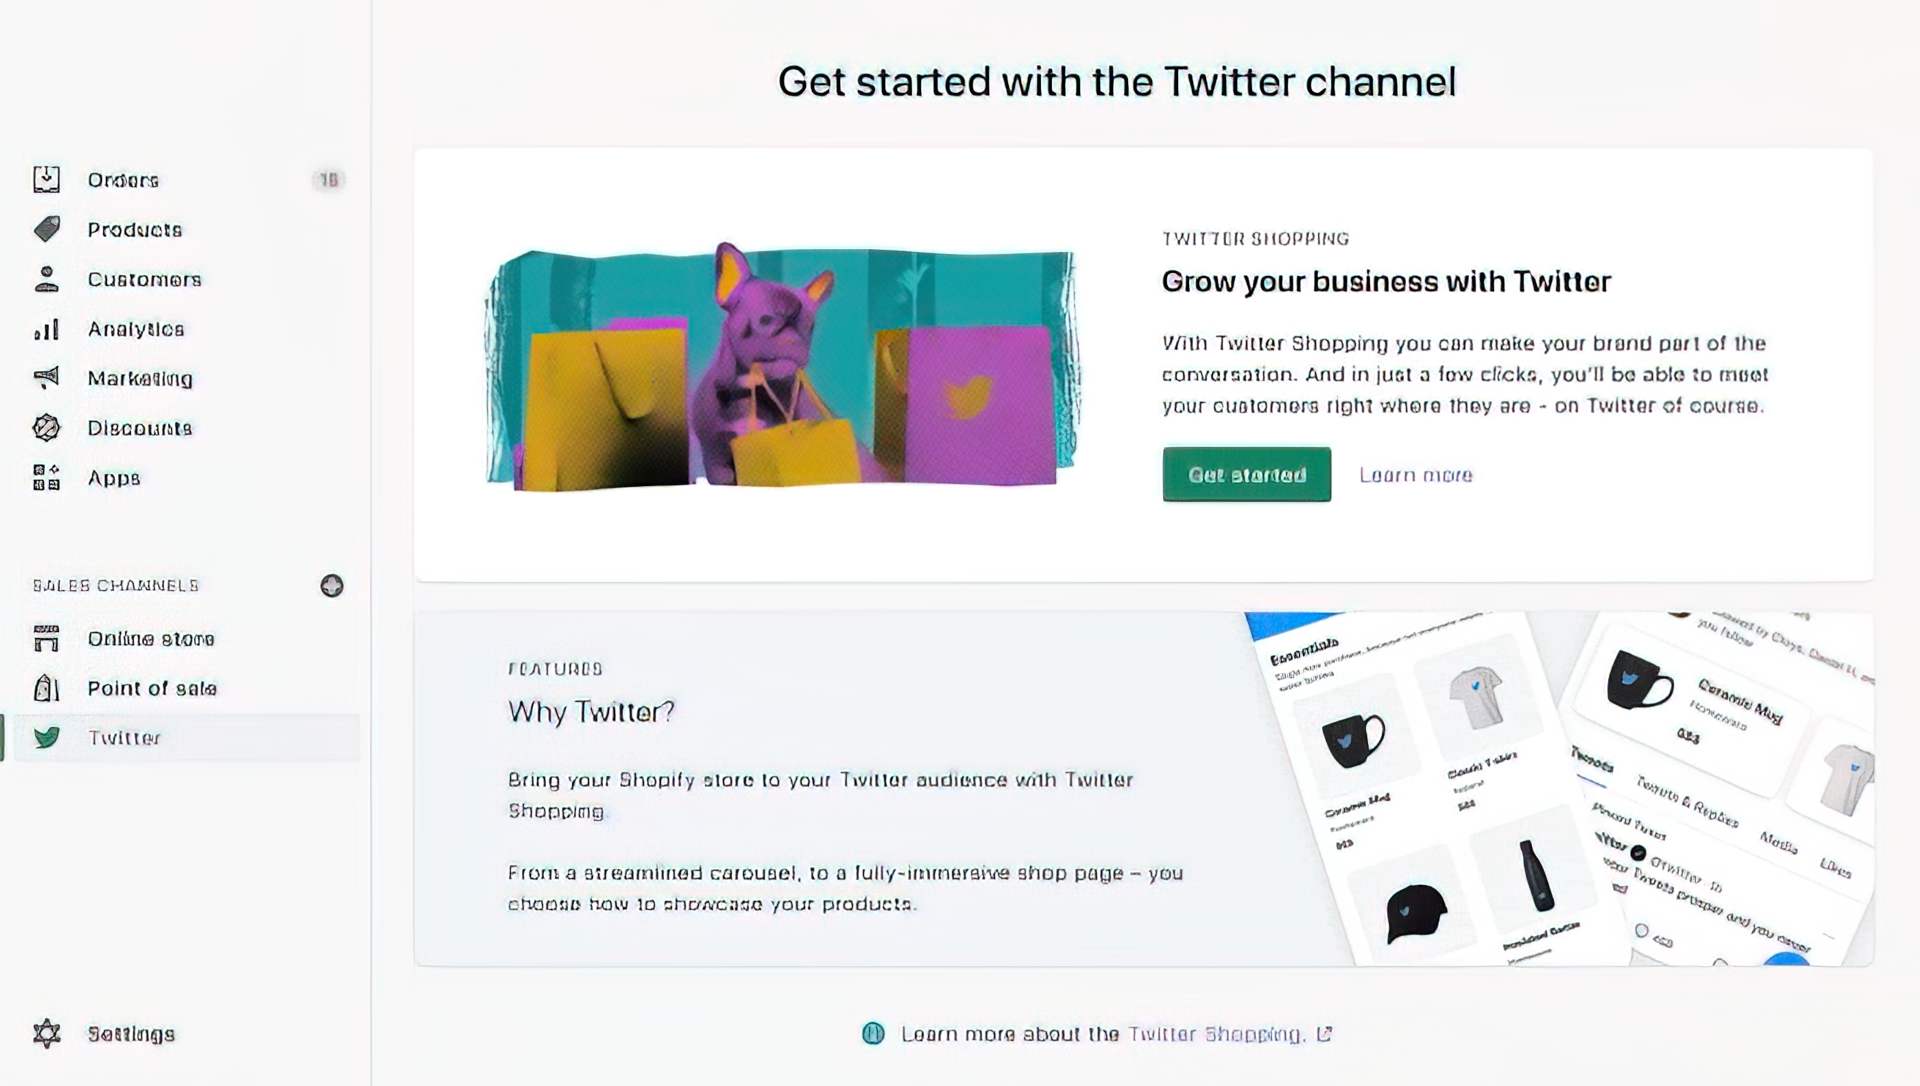 Интеграция Shopify с Twitter позволит продавцам Shopify перечислять свои товары в своих профилях Twitter Professional, причем каждый товар будет направлять покупателей.